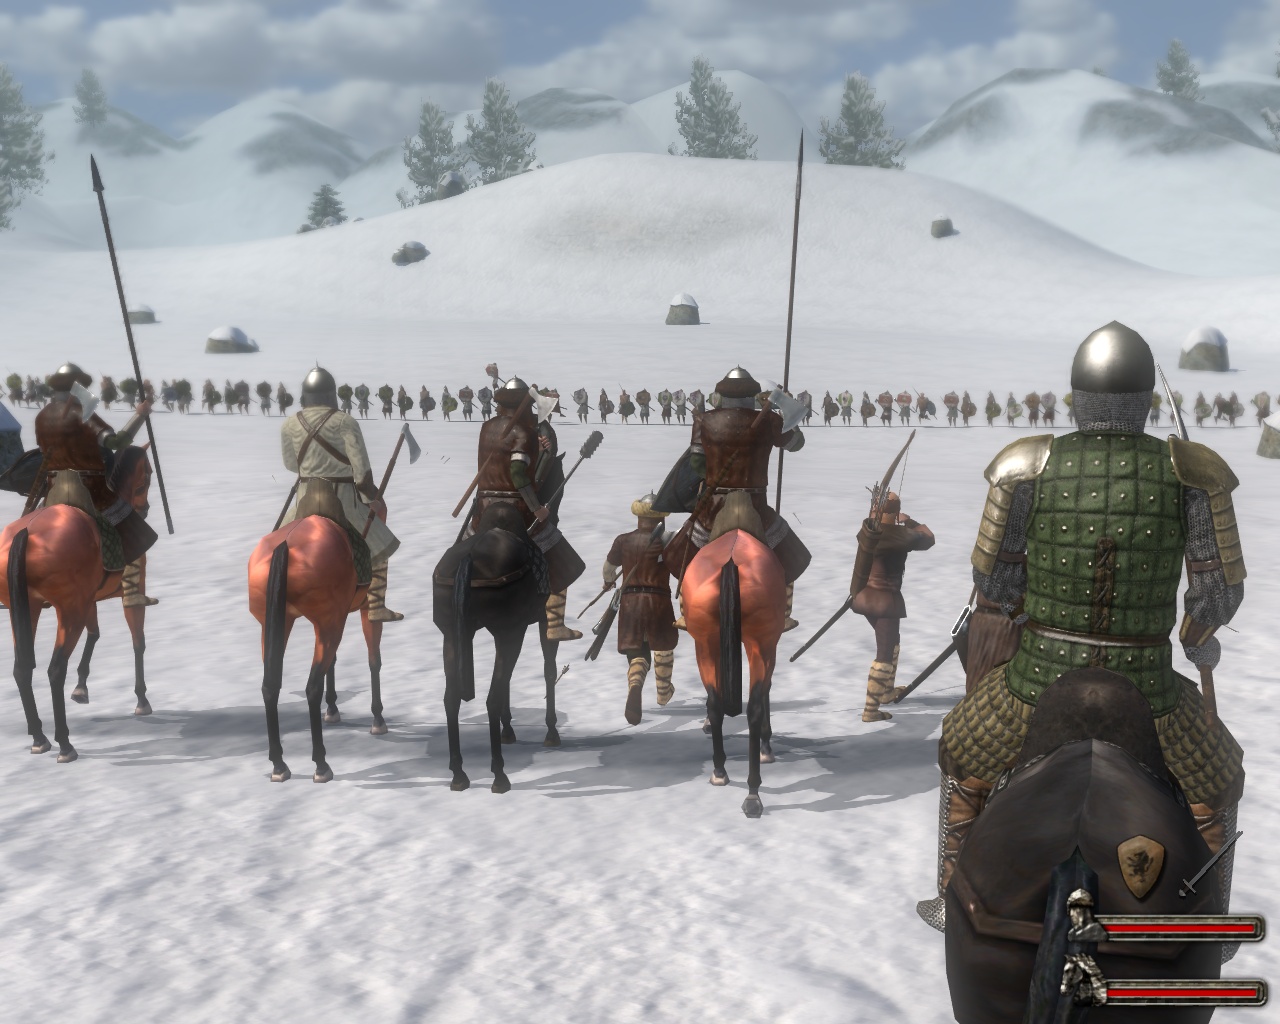 【大图】《骑马与砍杀:战团》高清游戏截图_电